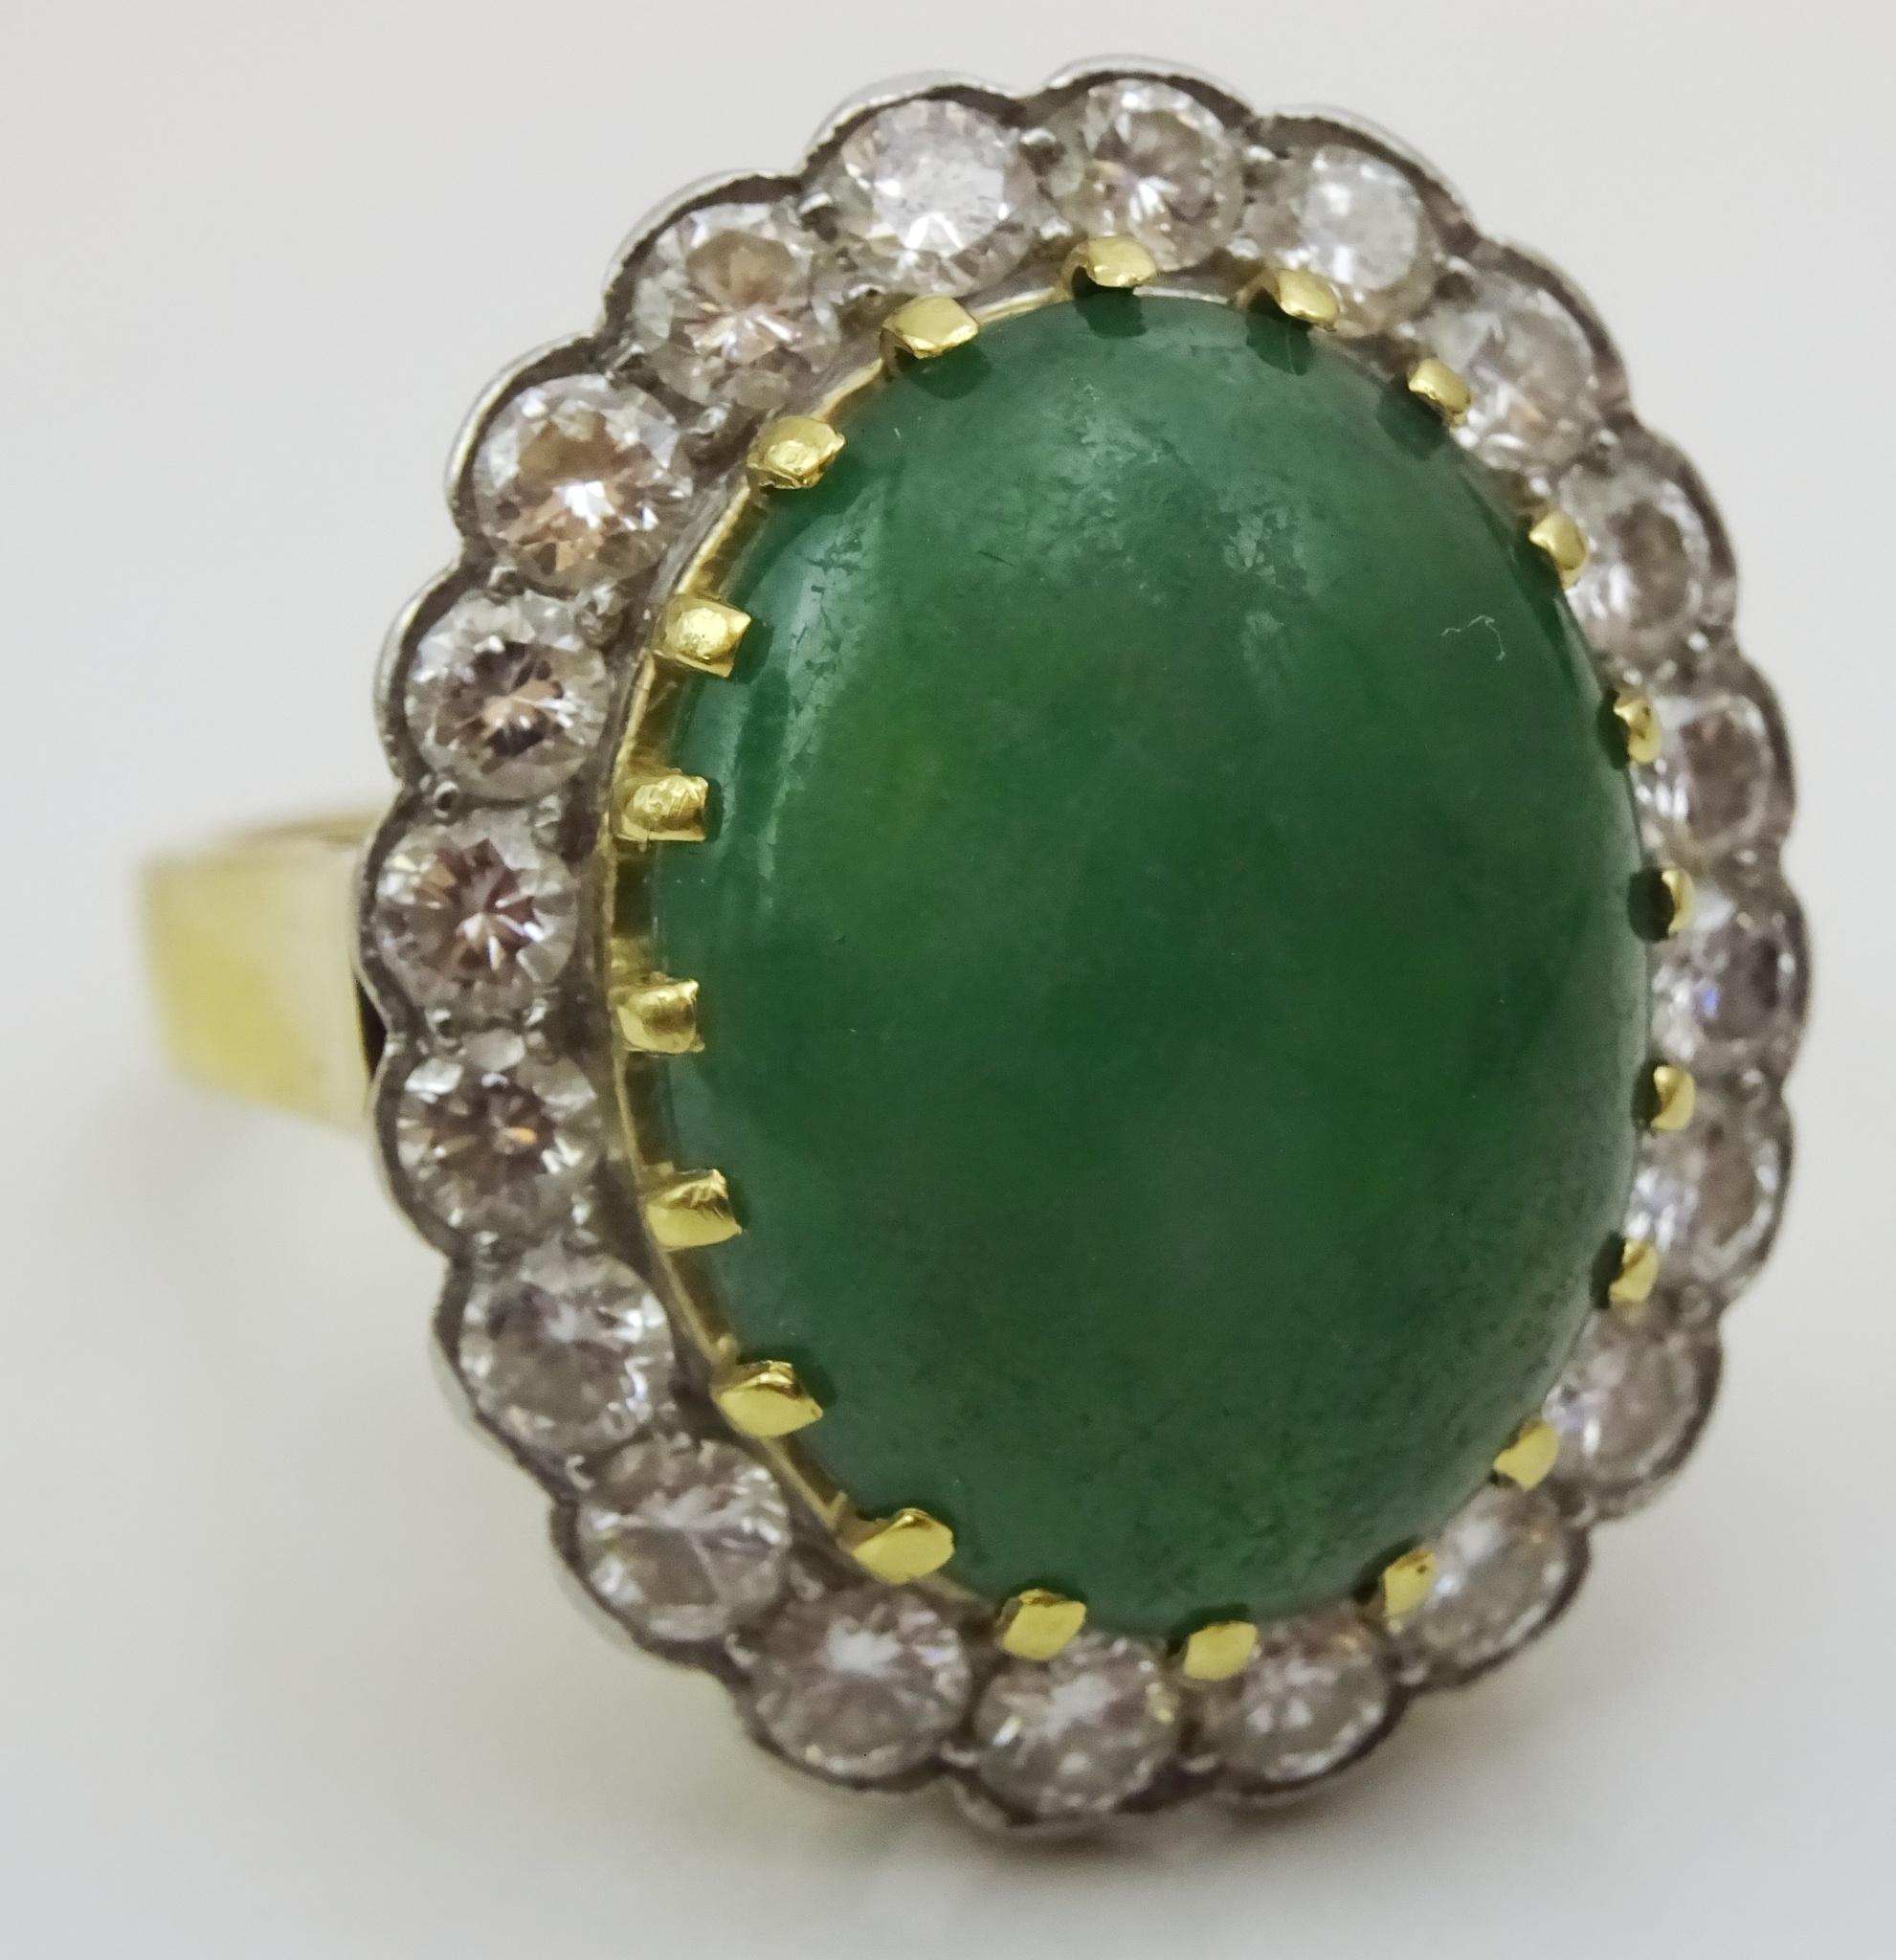 Ein exquisiter Ring von hoher Qualität, gekauft von einem Privatkunden.
Laut der Person, die ich gekauft habe, wurde dieser Ring in den 1960er Jahren gekauft.
Bestehend aus einem zentralen dunkelgrünen Jade Messung 12 x 16 mm oval, die von 20 3,2 mm